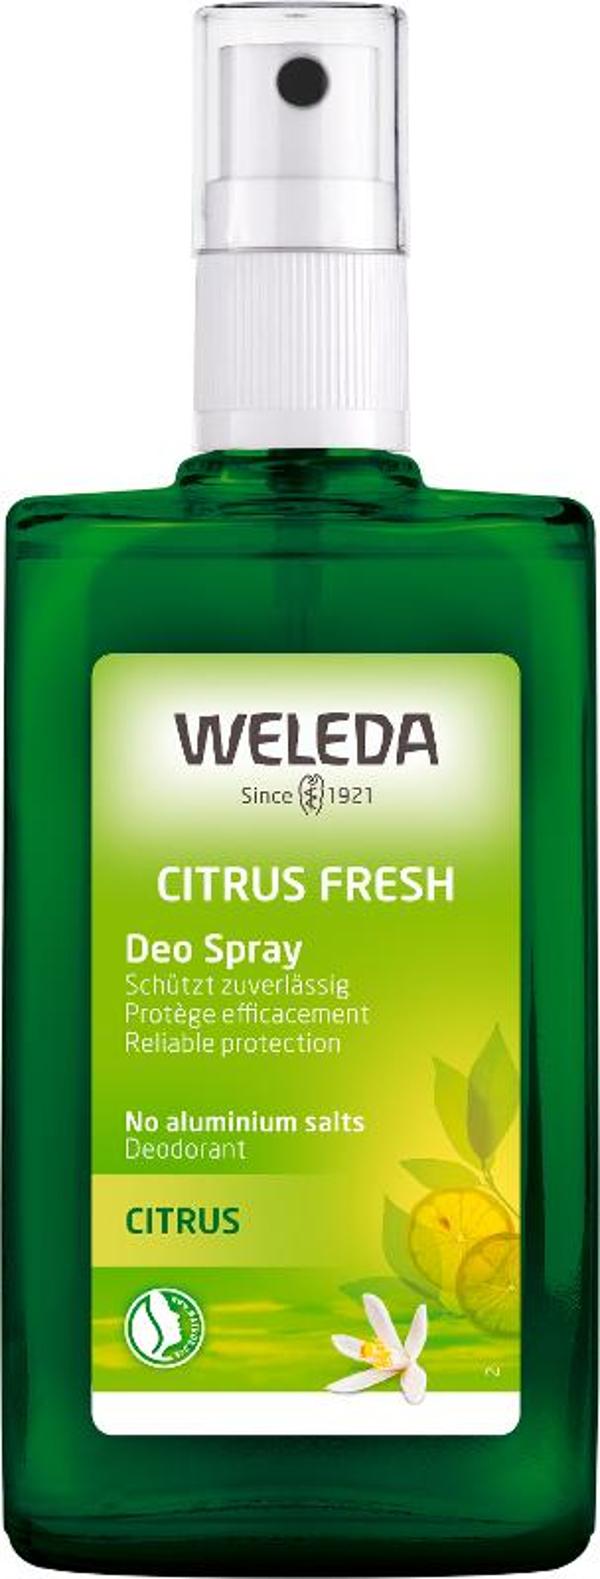 Produktfoto zu Citrus Deodorant von Weleda